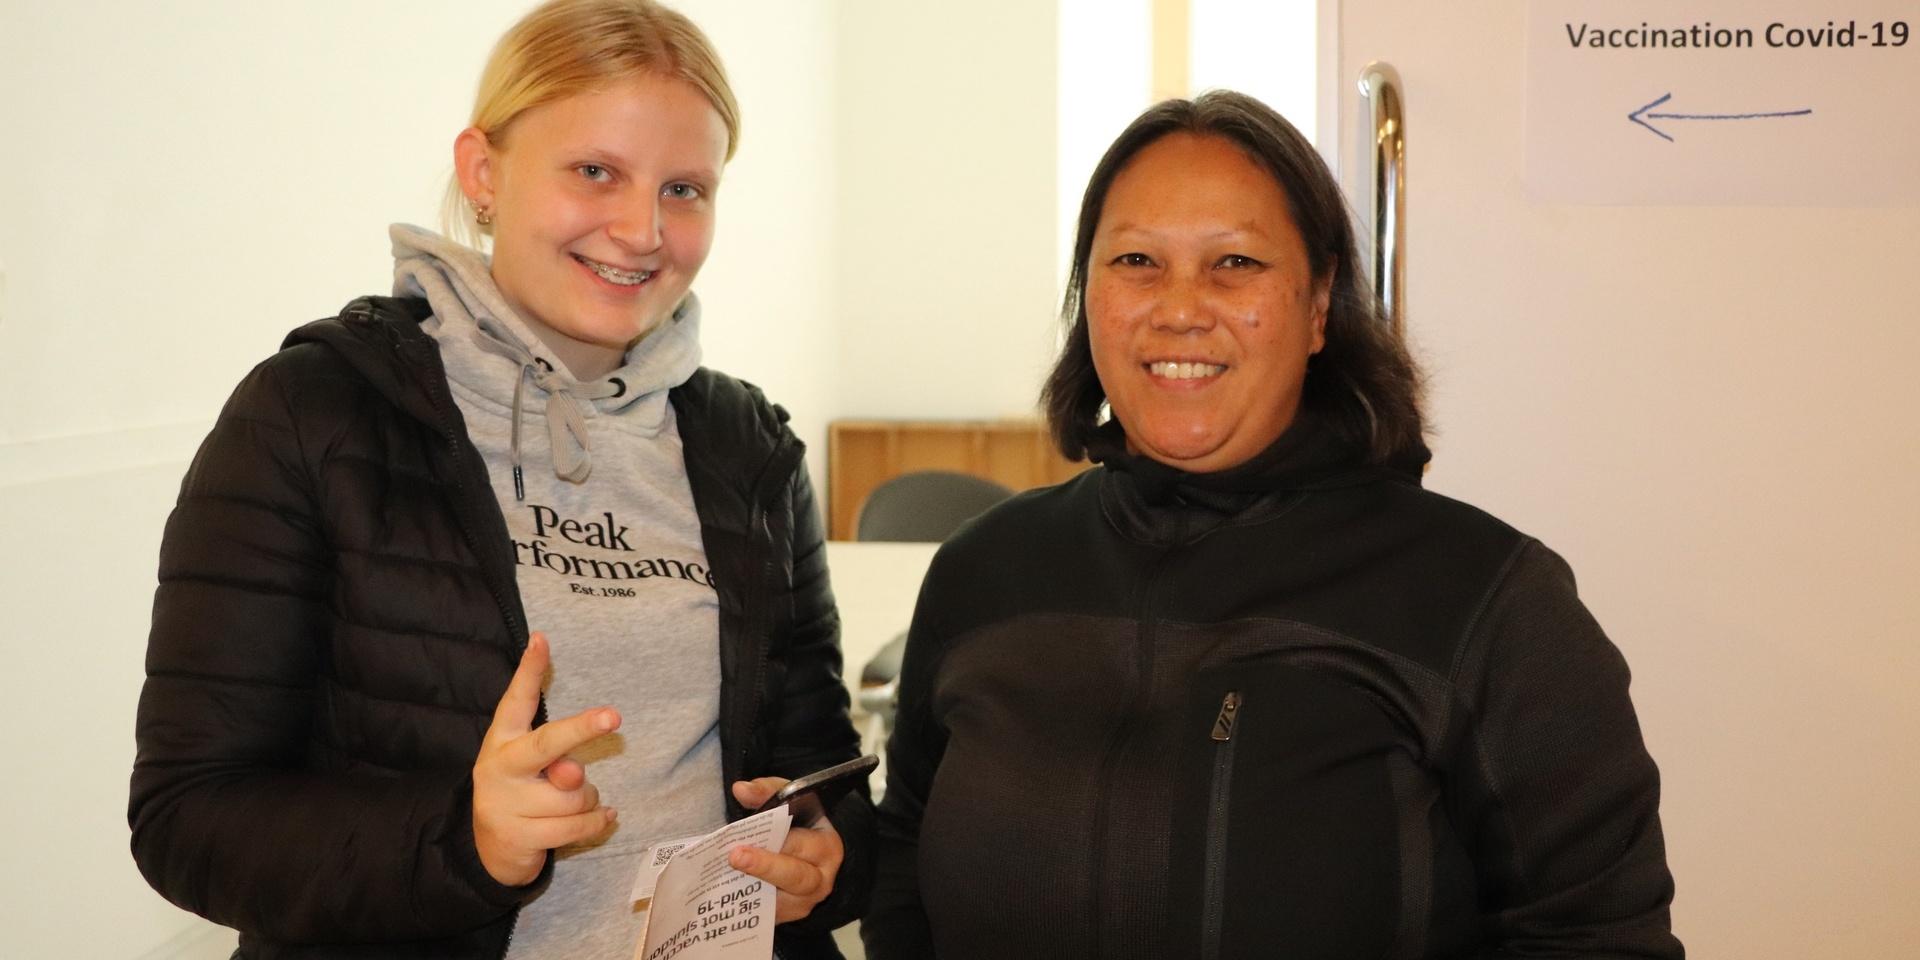 Så nöjd! Sofie Jardestedt, 17, övervann sin rädsla på sprutor och vaccinerade sig. Mimmi Granaas följde med som stöd. 